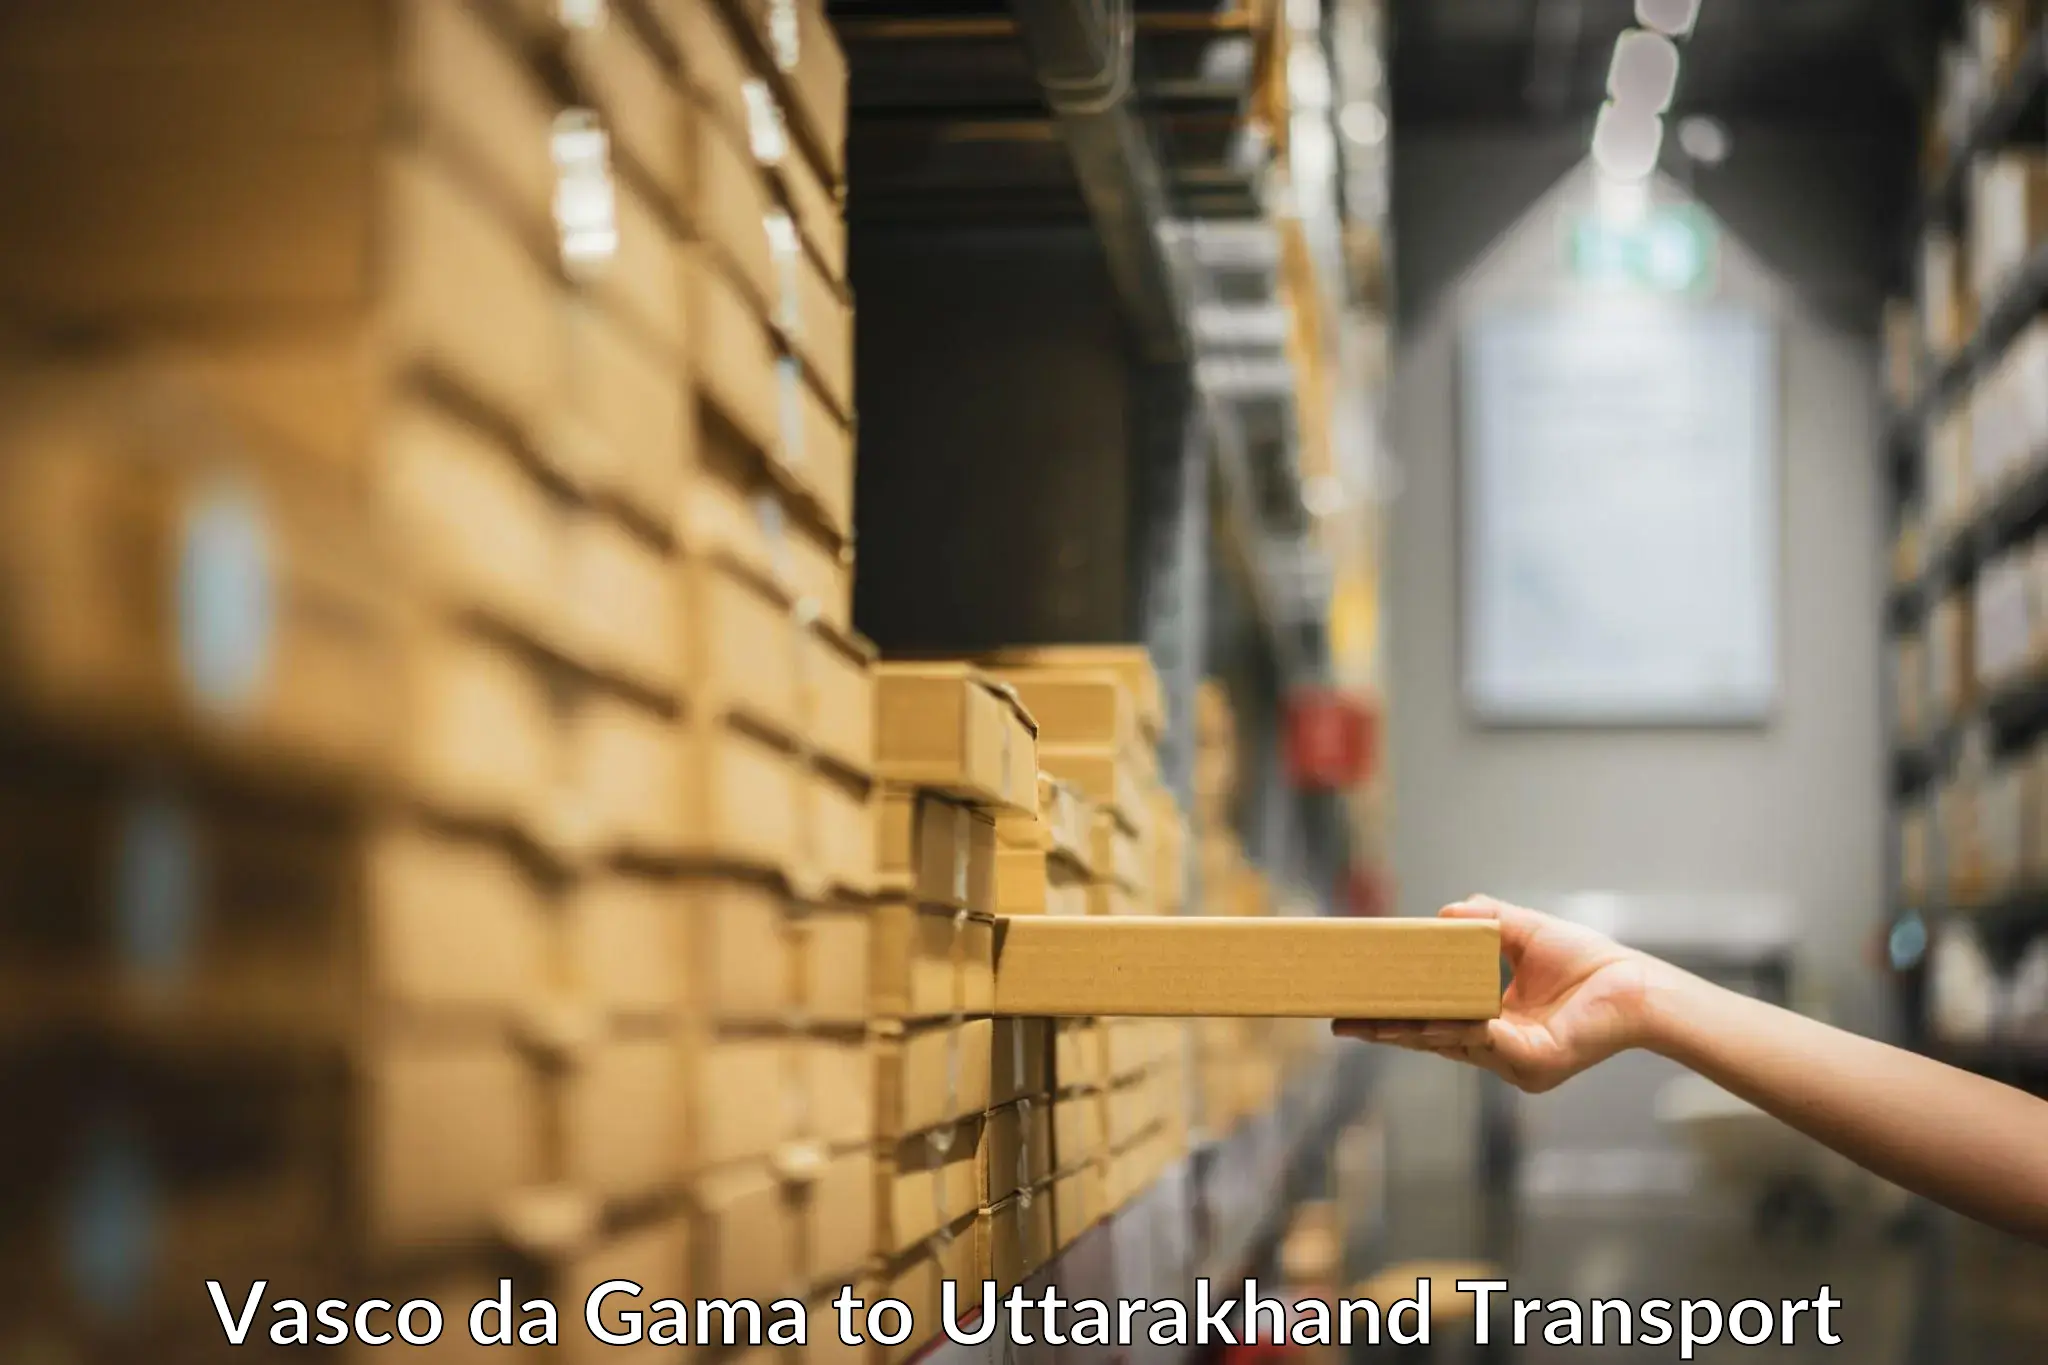 Two wheeler parcel service Vasco da Gama to Uttarakhand